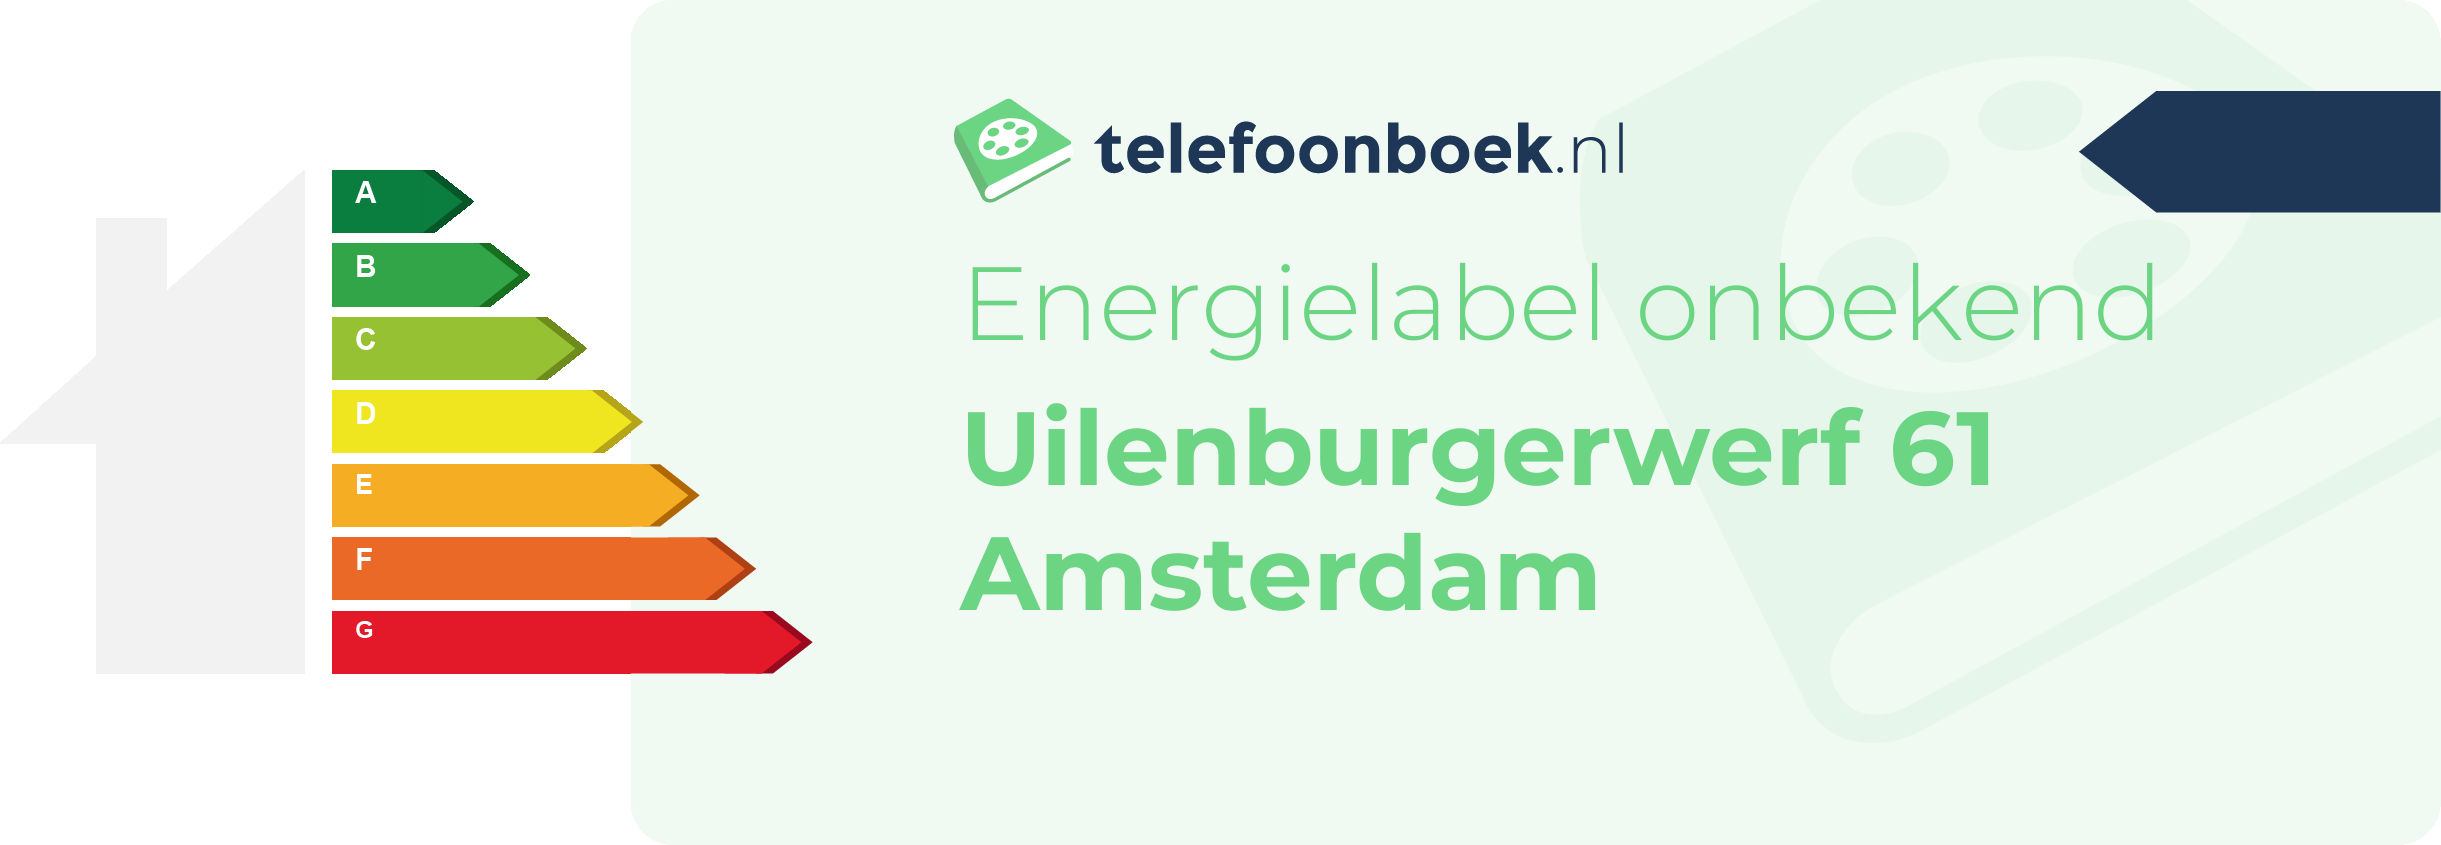 Energielabel Uilenburgerwerf 61 Amsterdam